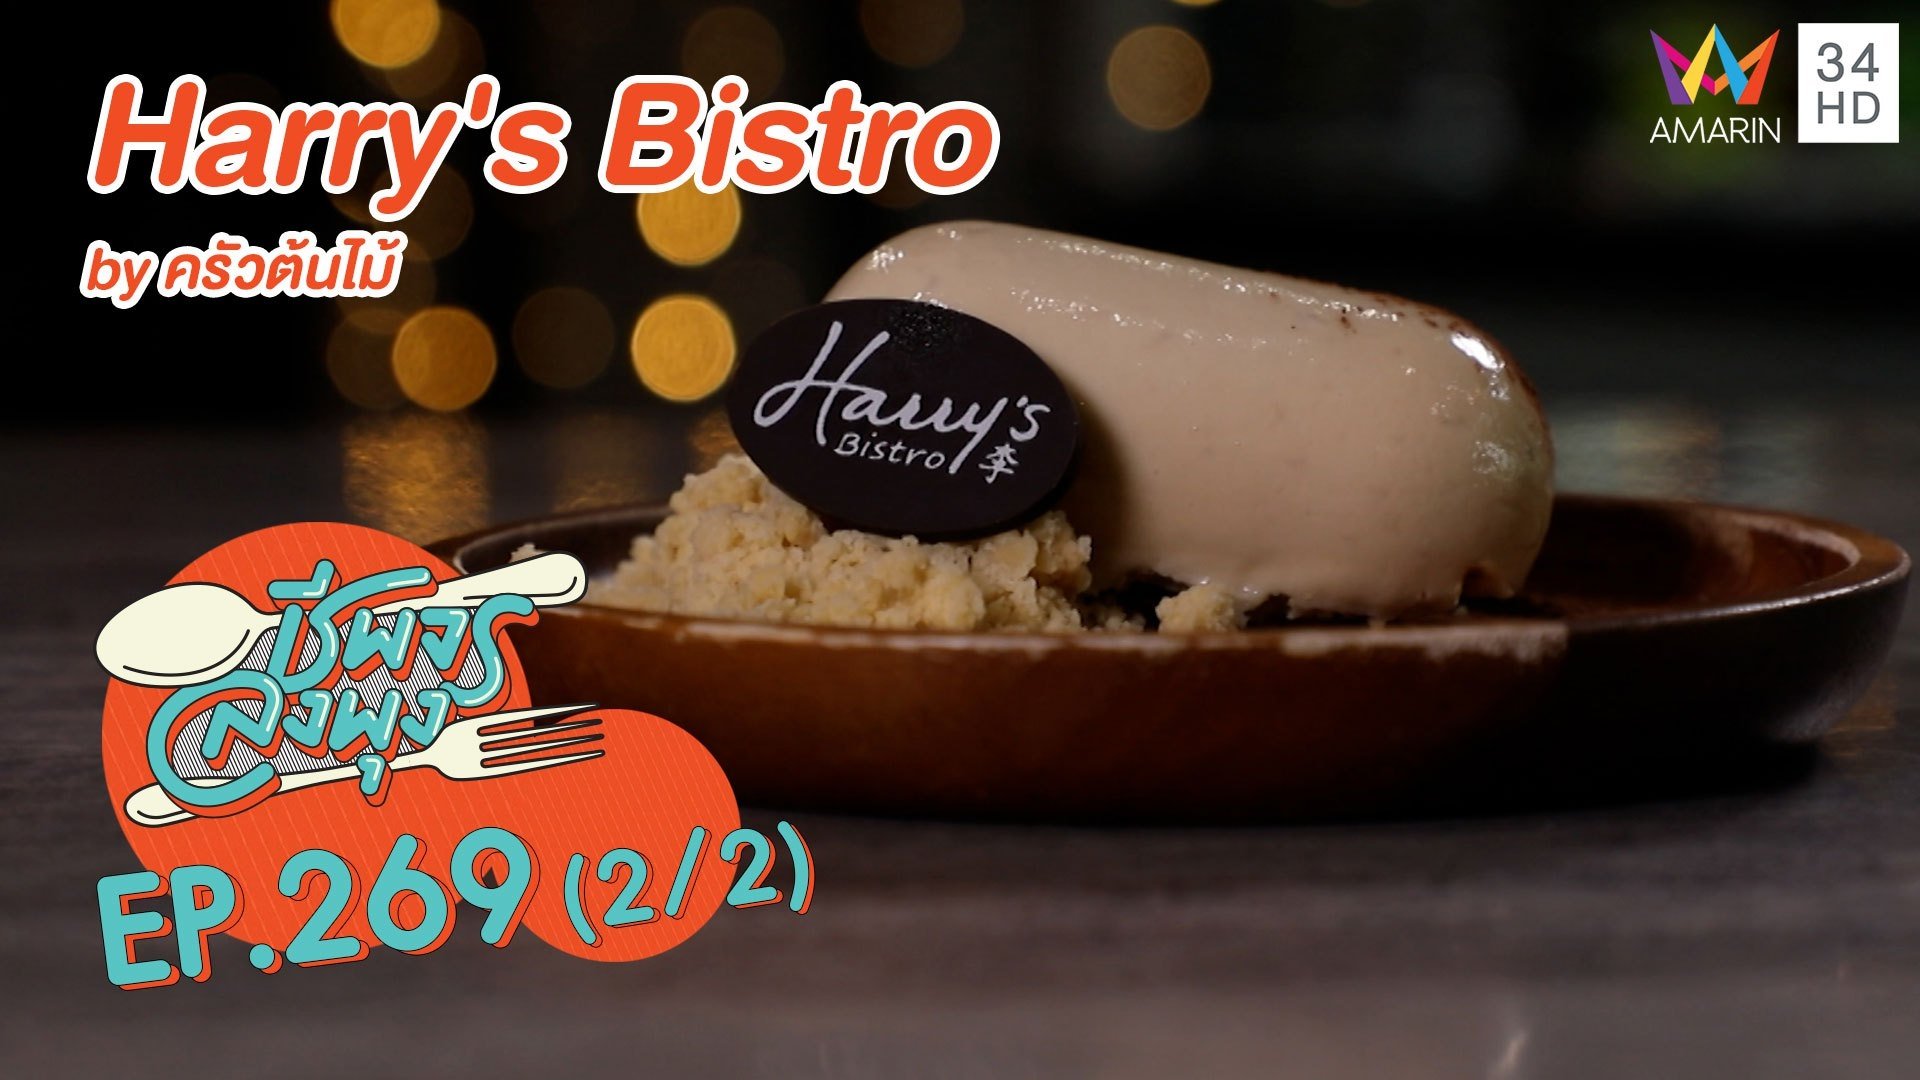 อร่อยครบเครื่อง 'Harry's Bistro by ครัวต้นไม้' | ชีพจรลงพุง | 17 ม.ค. 64 (2/2) | AMARIN TVHD34